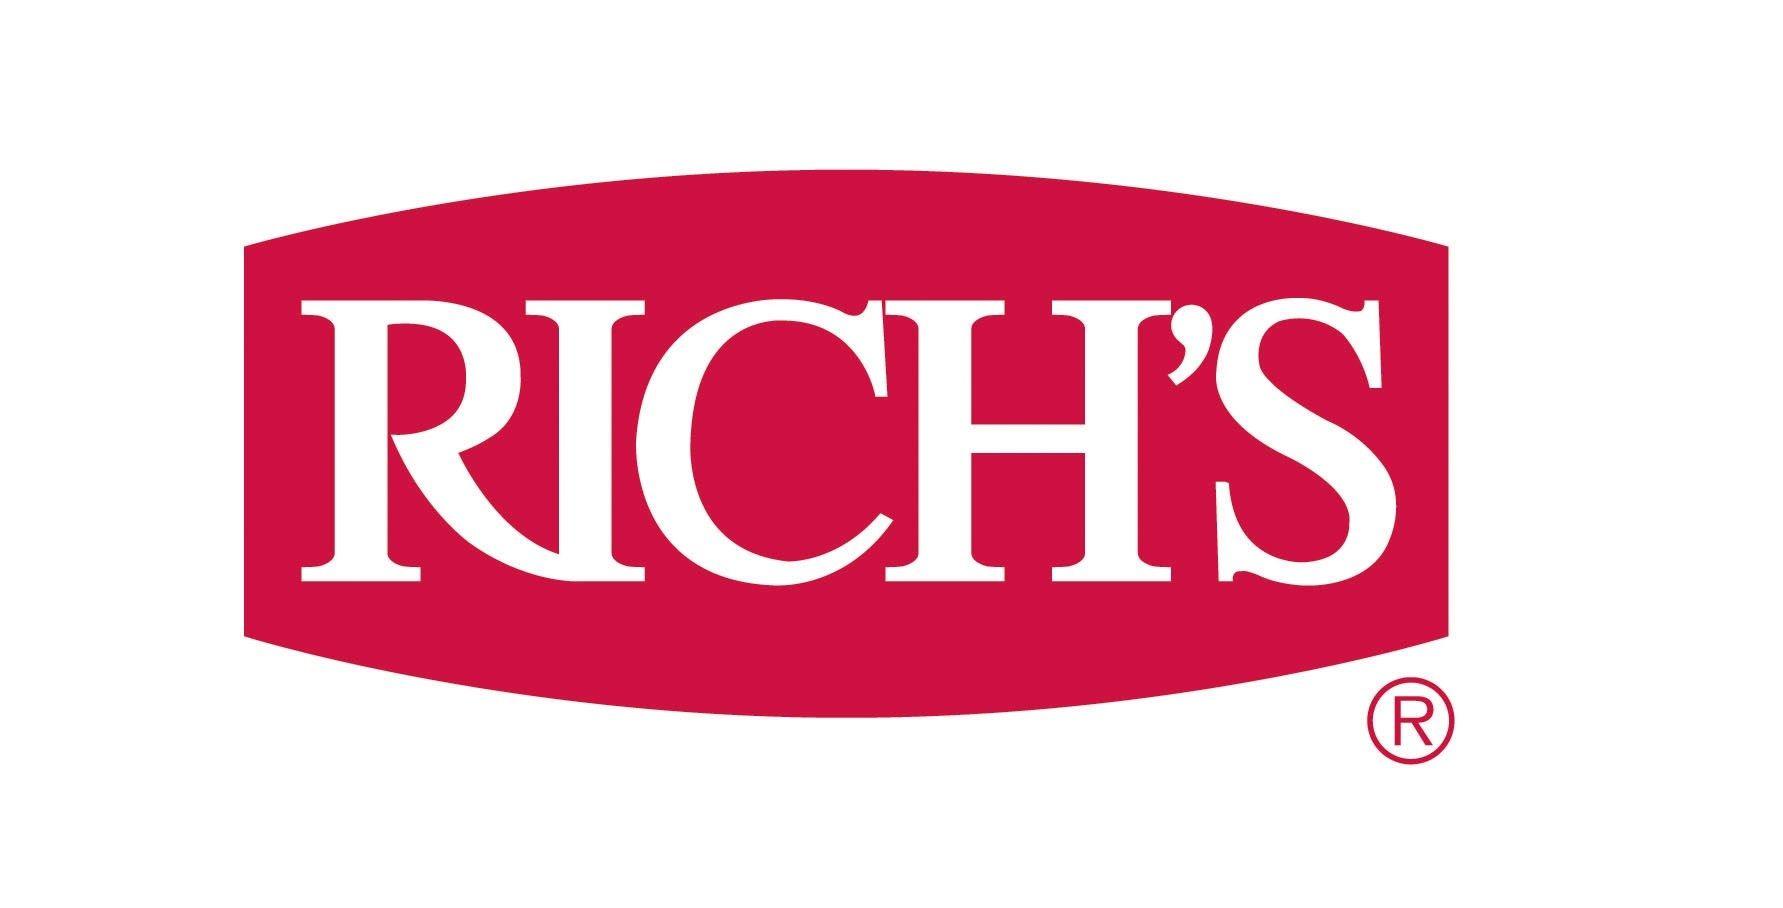 PMS Logo - Rich's Logo pms 200 RGB